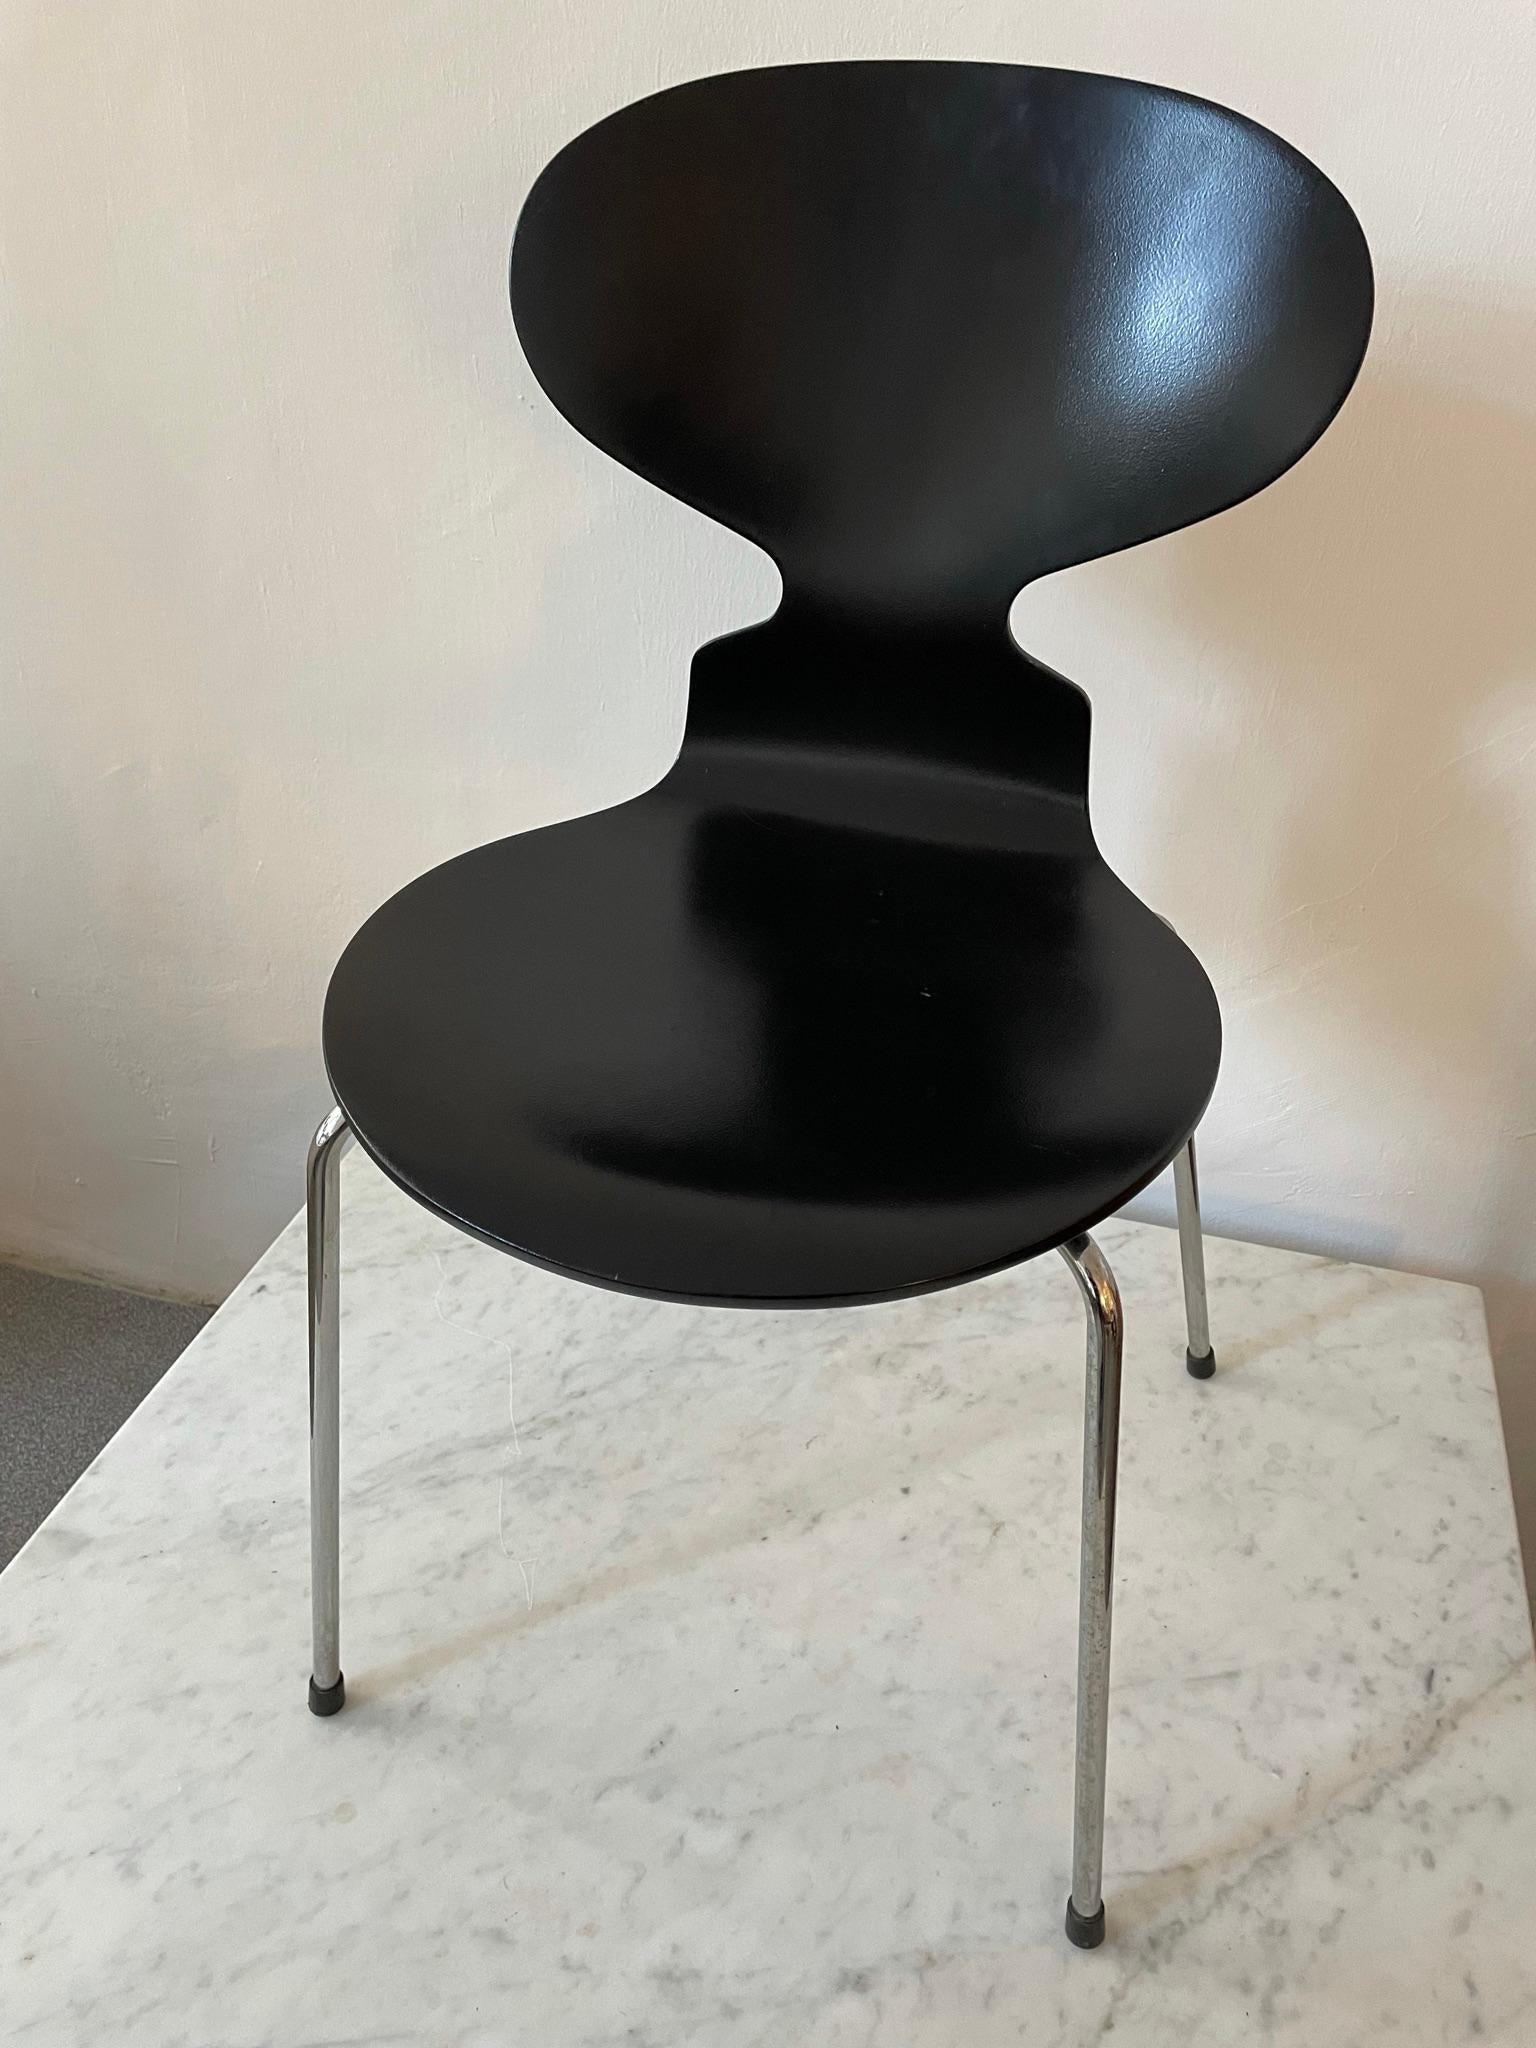 Scandinavian Modern Black Ant Chair by Arne Jacobsen for Fritz Hansen